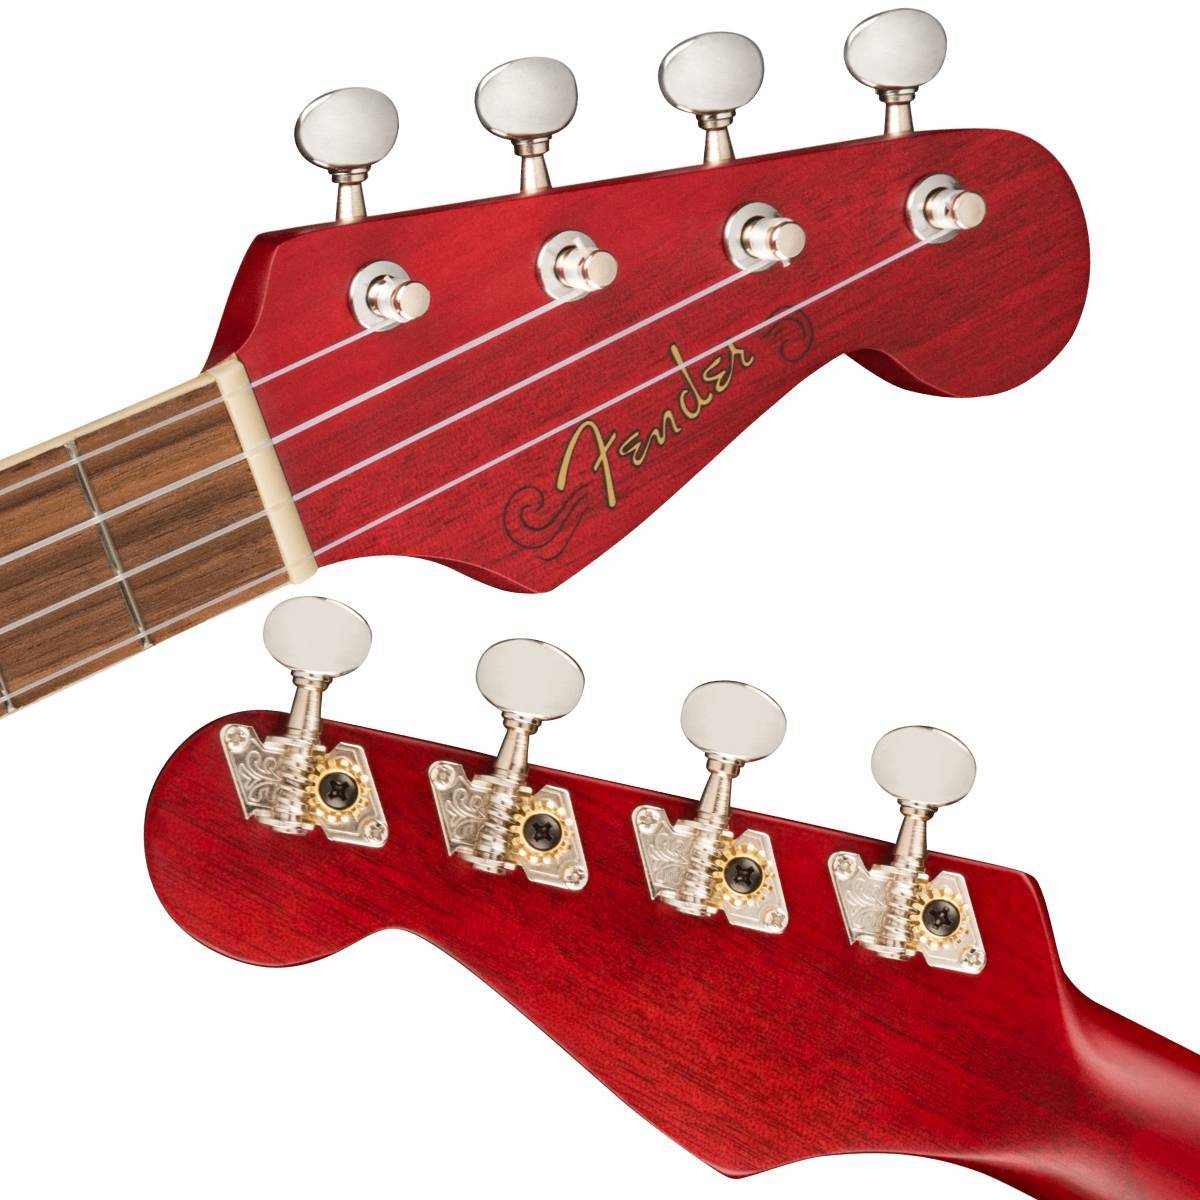 Fender Acoustics アコースティックギター アコースティックス フェンダー